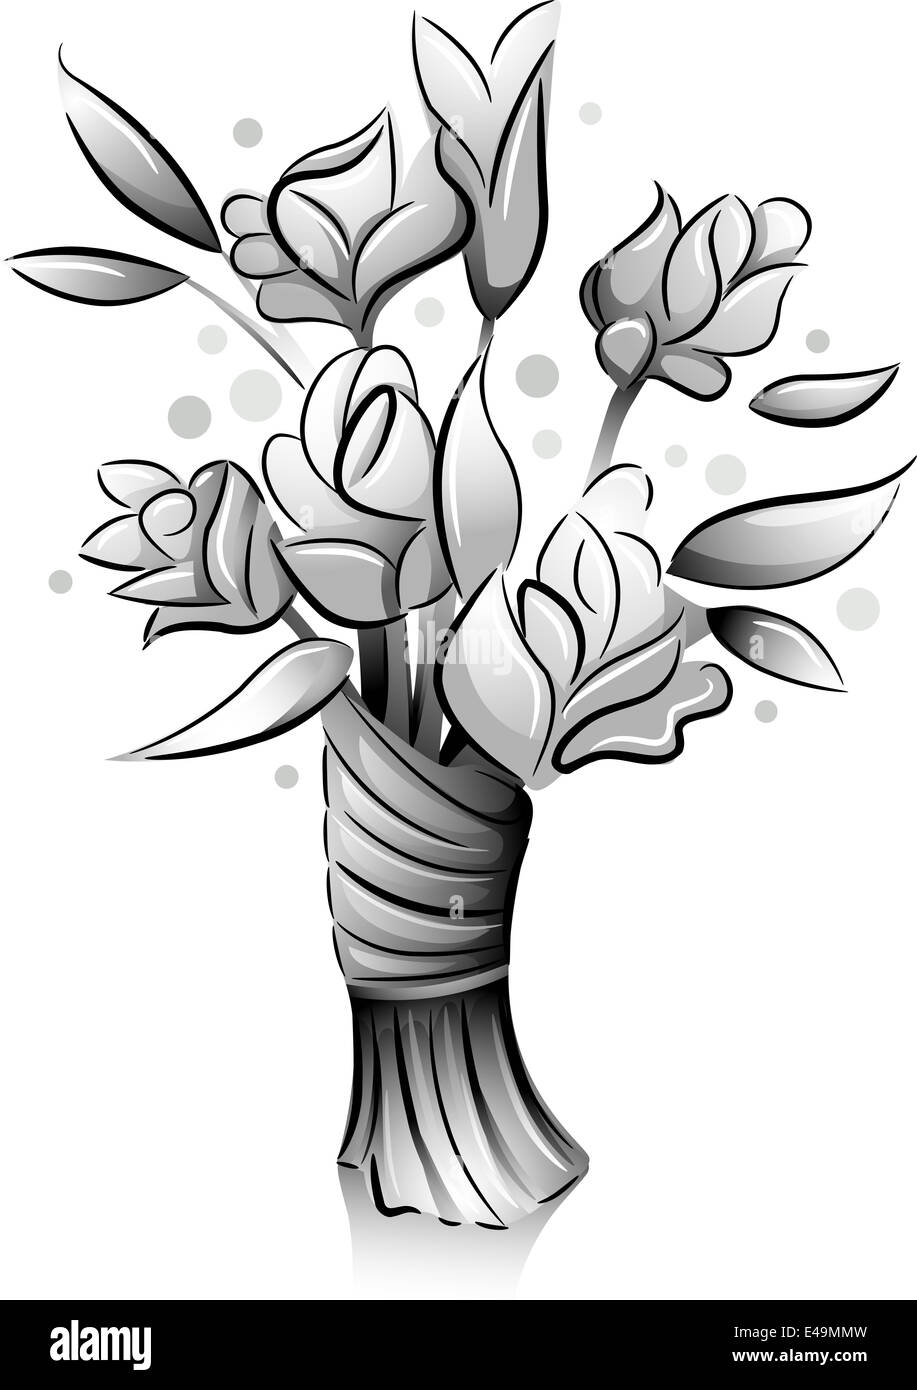 Symbol-Darstellung mit einem Blumenstrauß in schwarz und weiß gezeichnet Stockfoto